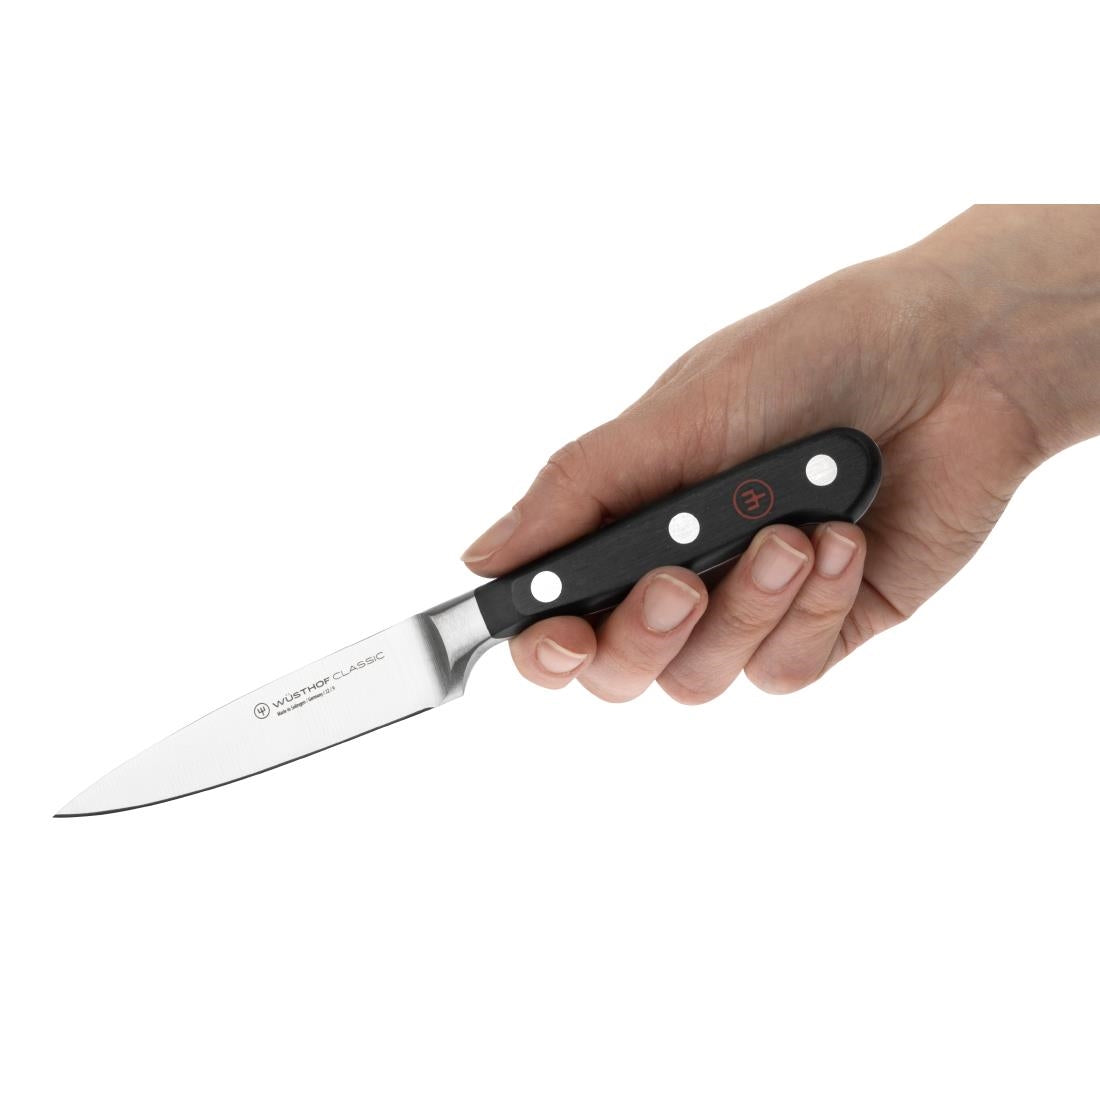 C990 Wusthof Paring Knife 9cm